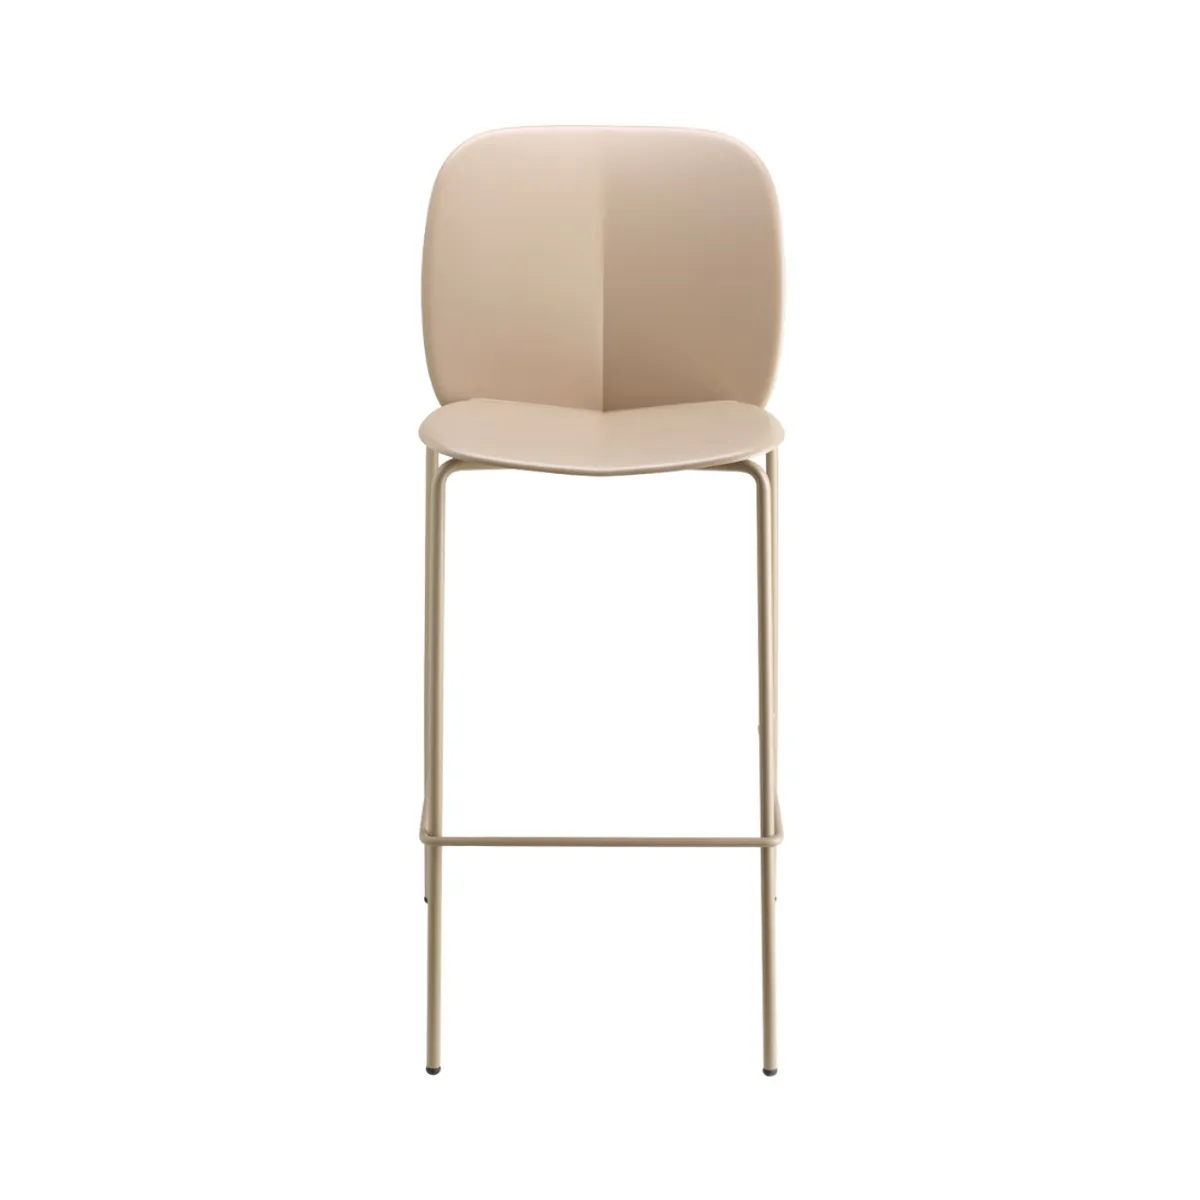 Reynders stool 2